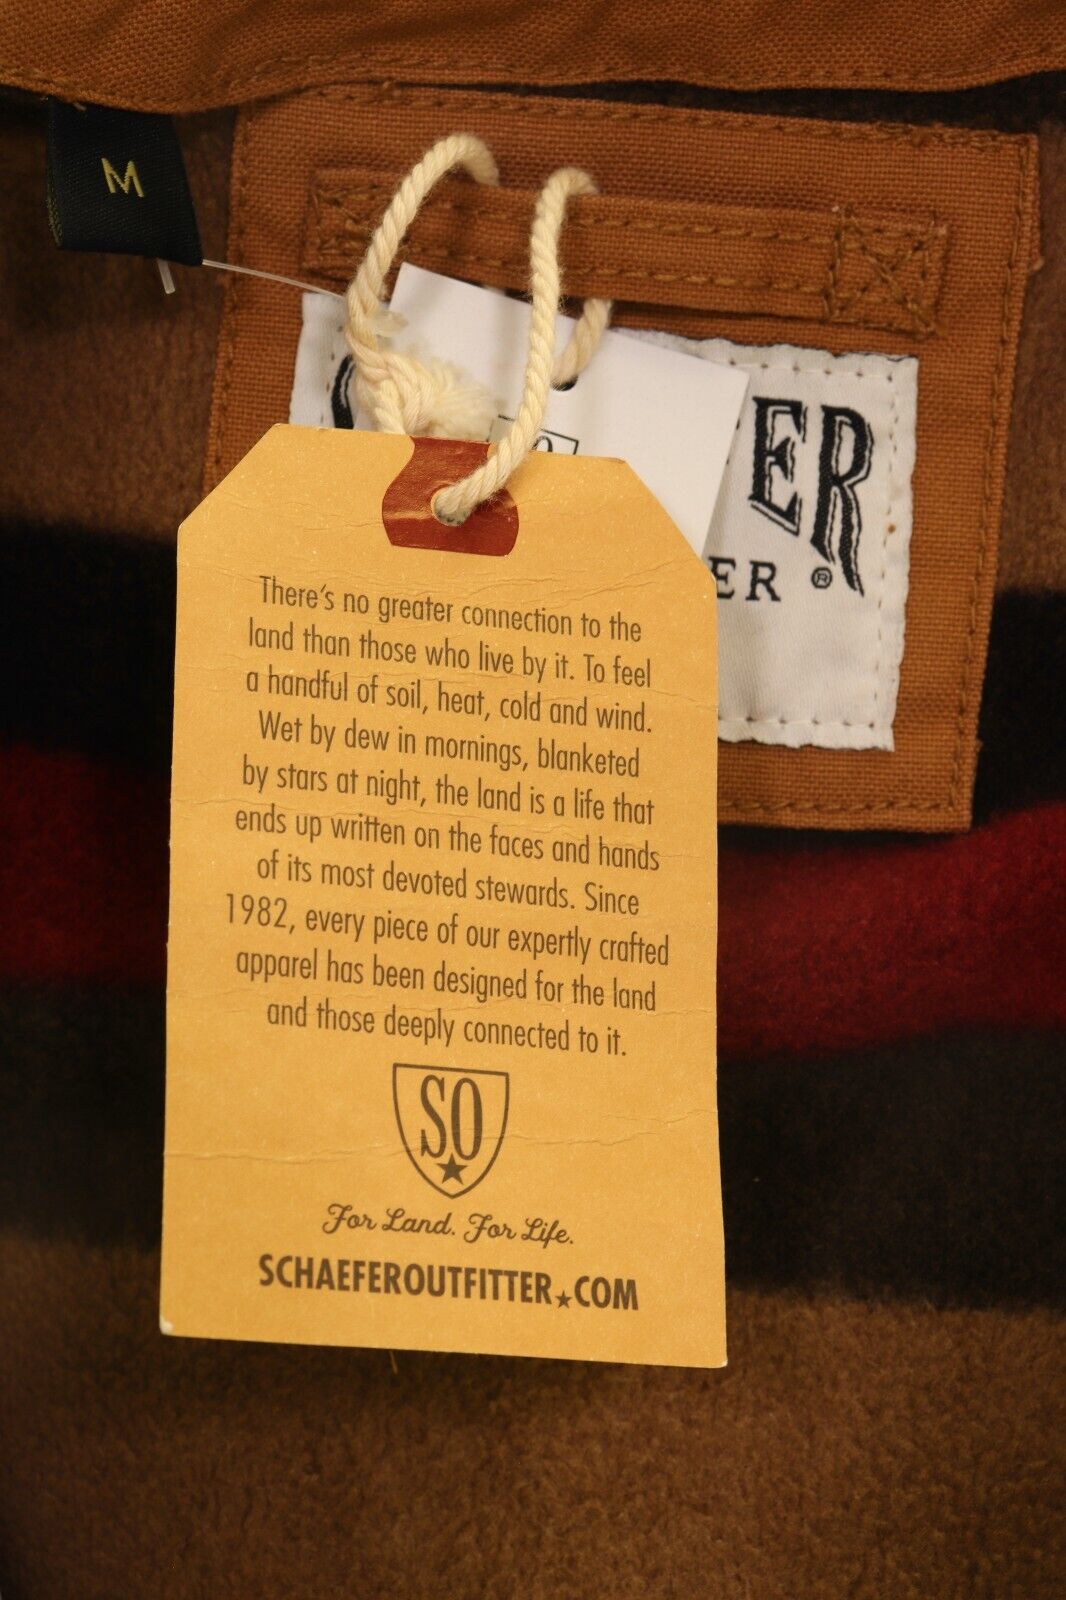 Schaefer Outfitter Men's Vest Saddle Blanket Lined Vintage Mesquite (S03)